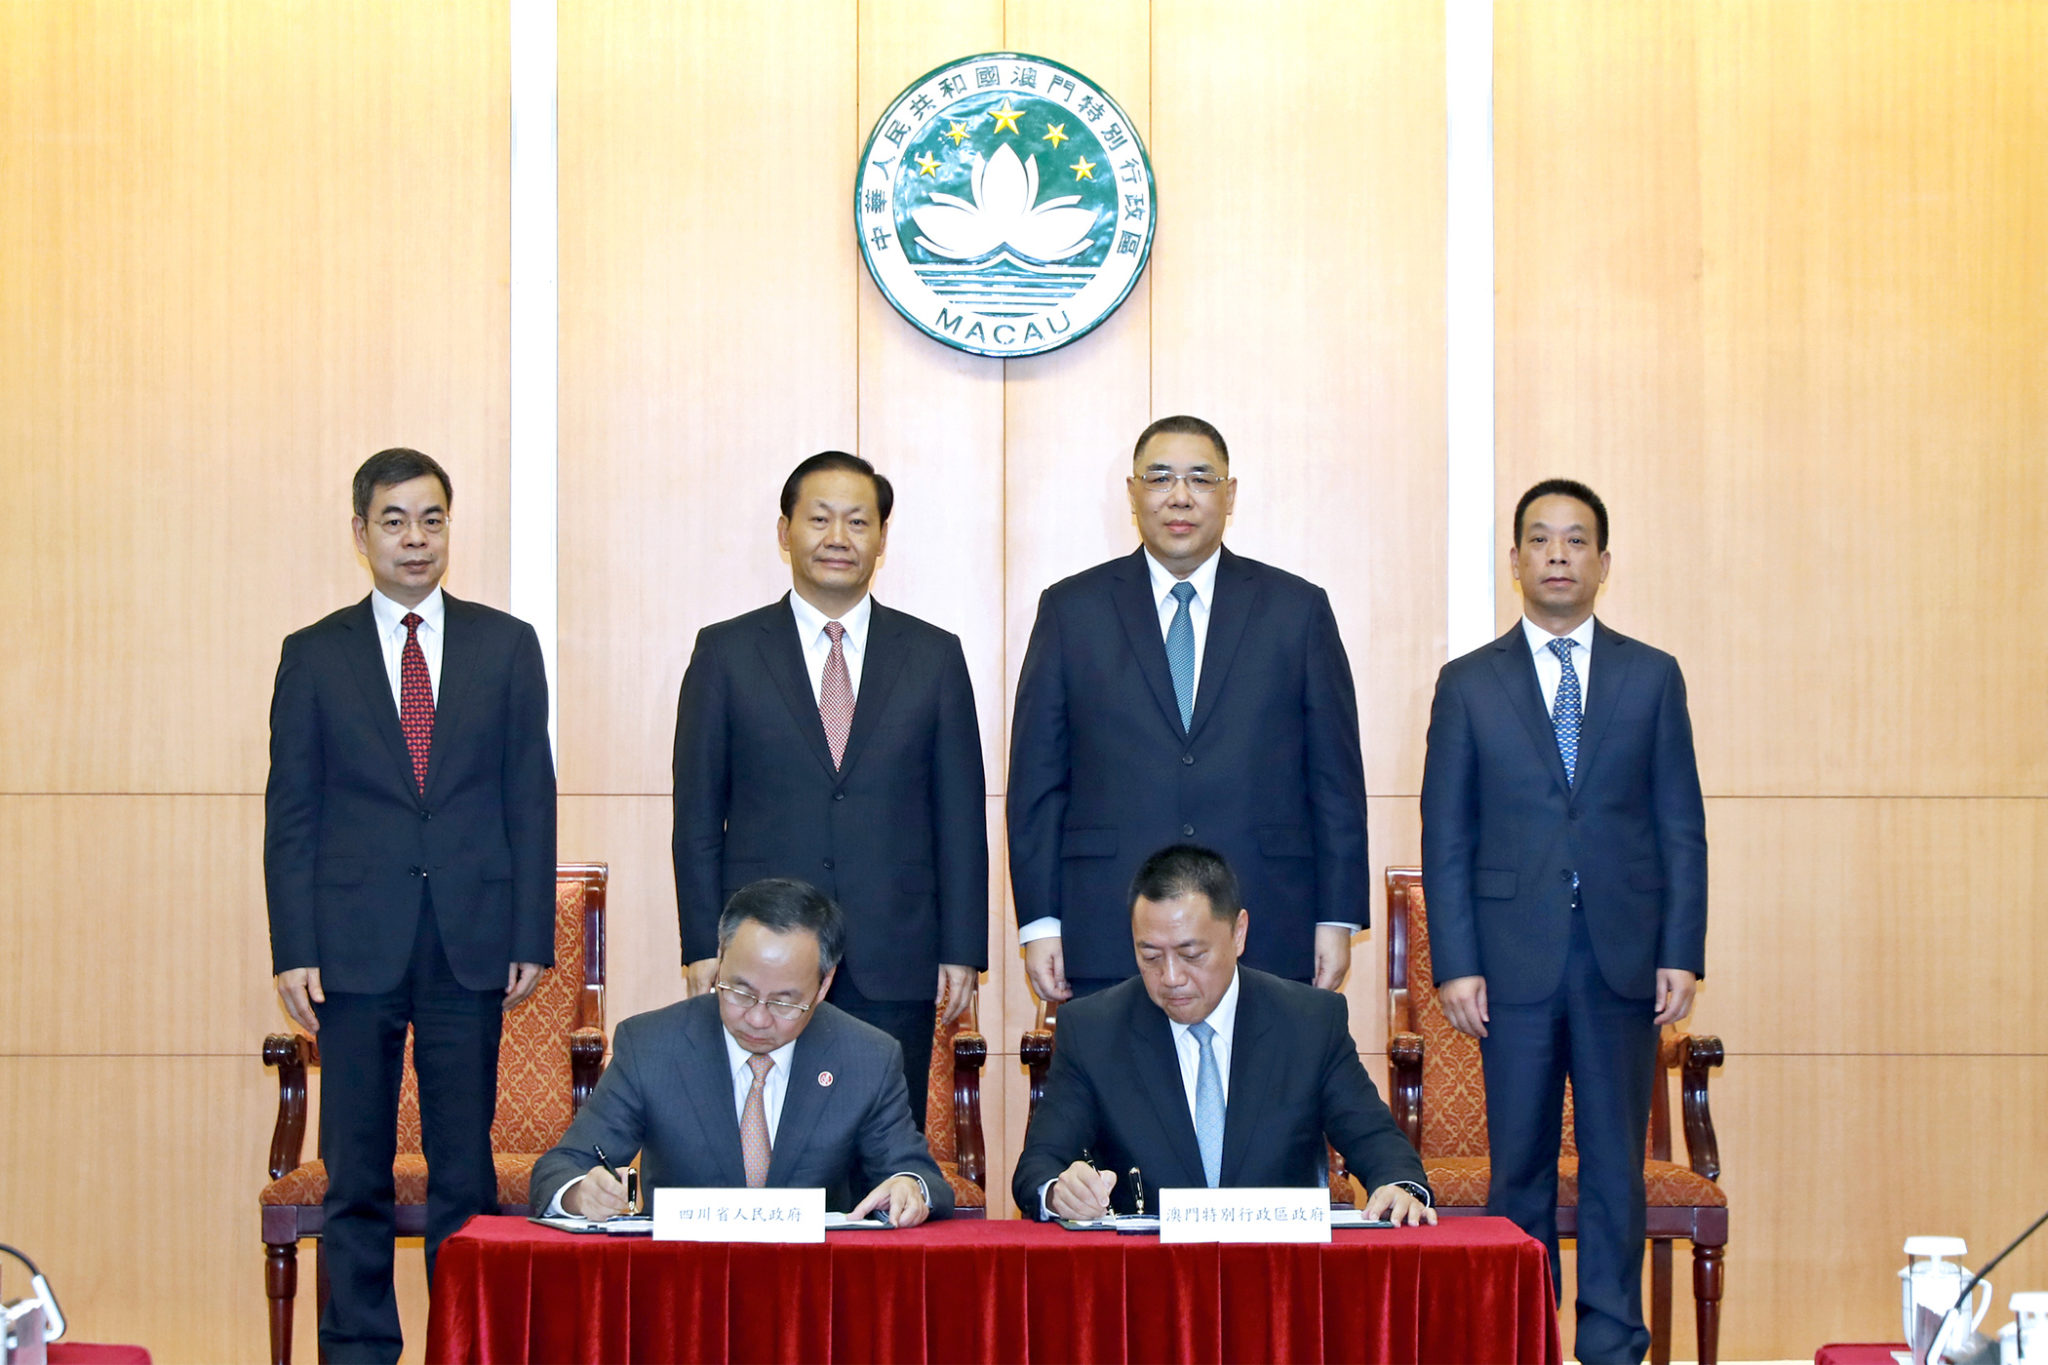 Macau e Sichuan assinam acordos de cooperação